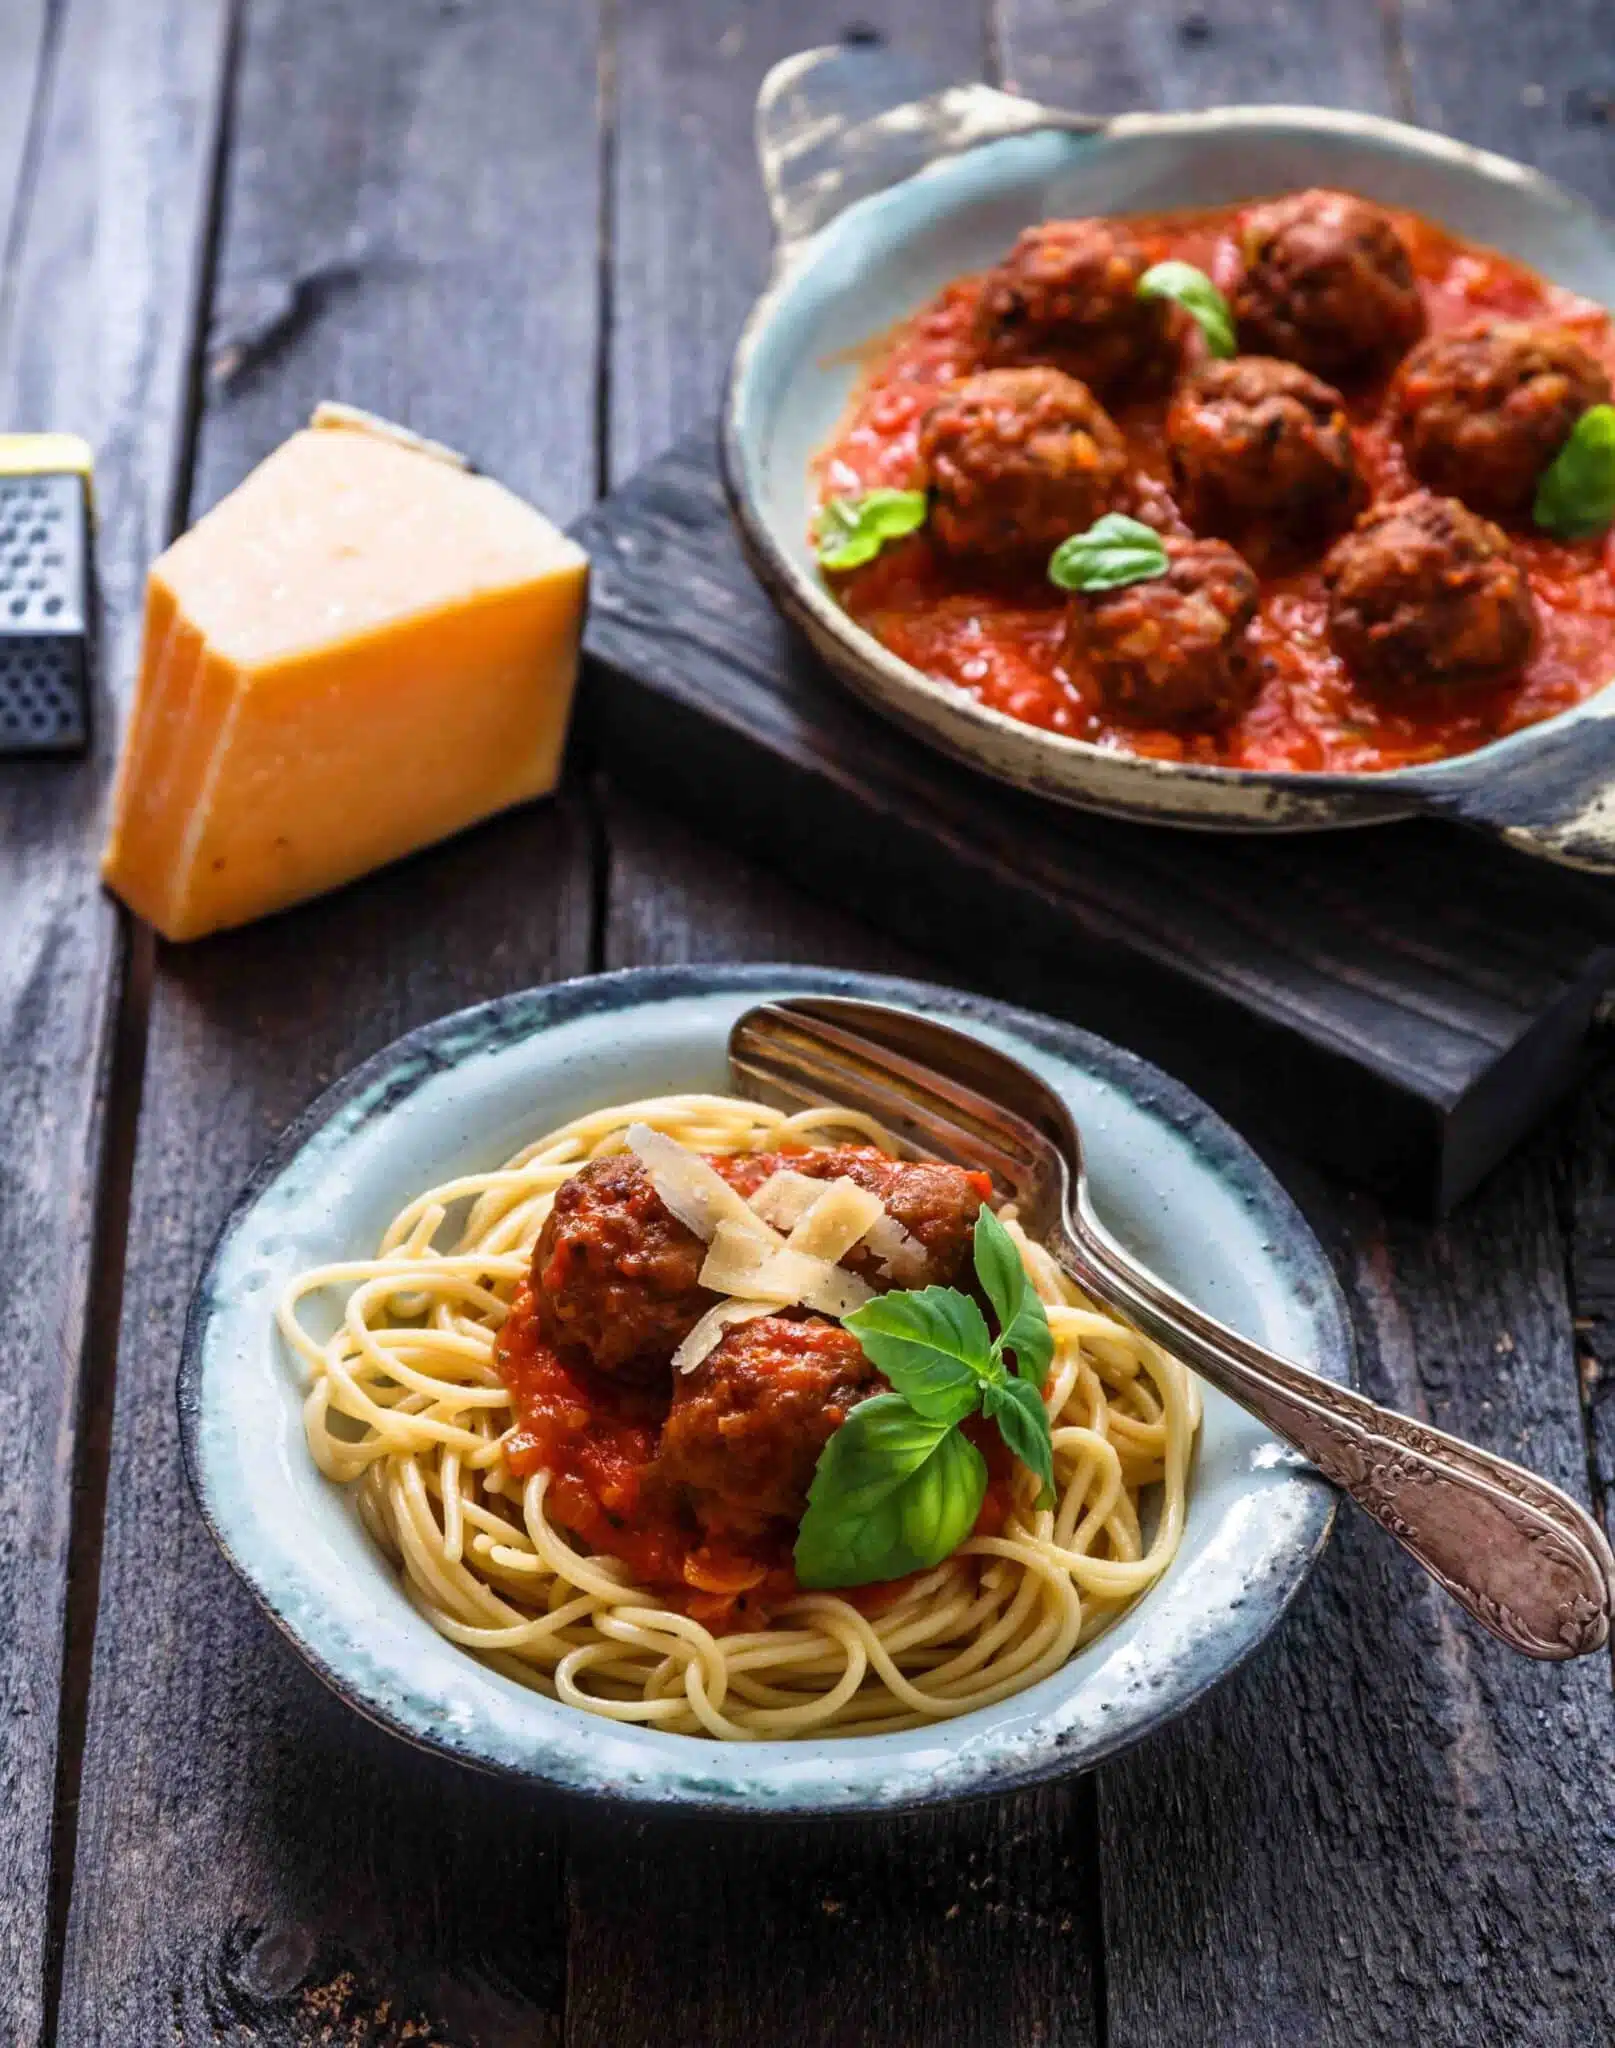 Spaghetti avec boulettes de viande et sauce tomate — KACHEN